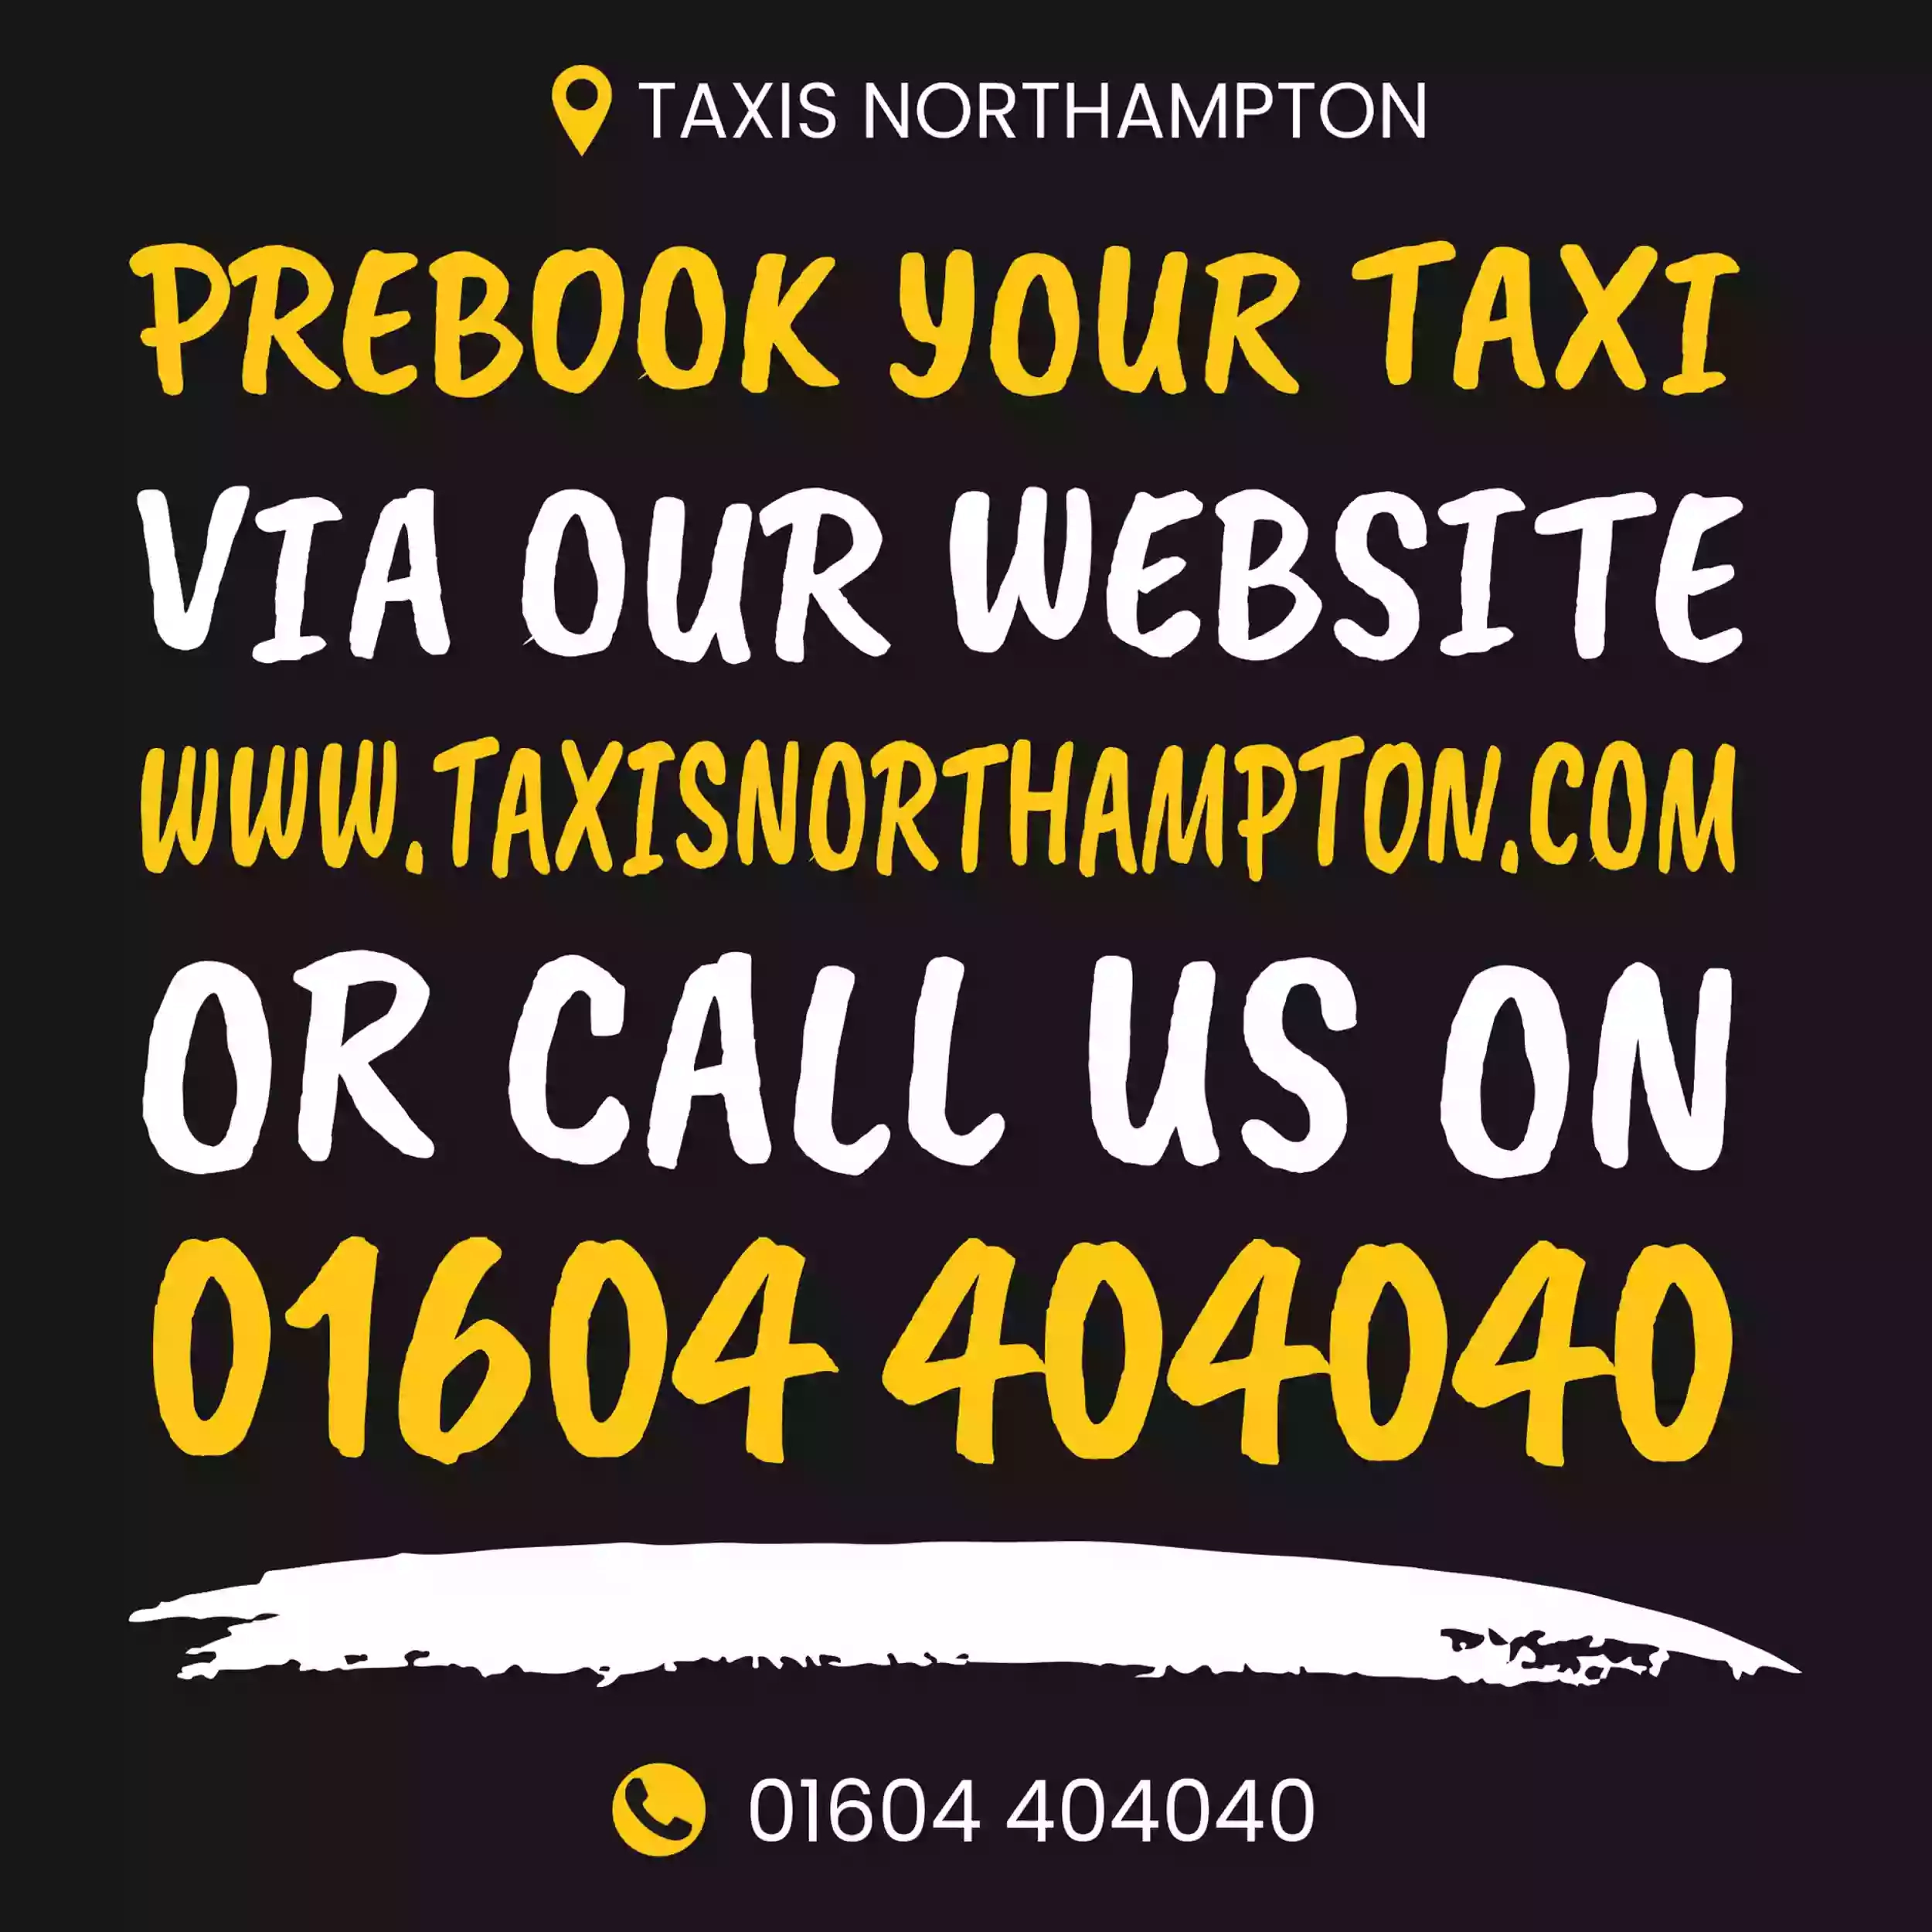 Taxis Northampton